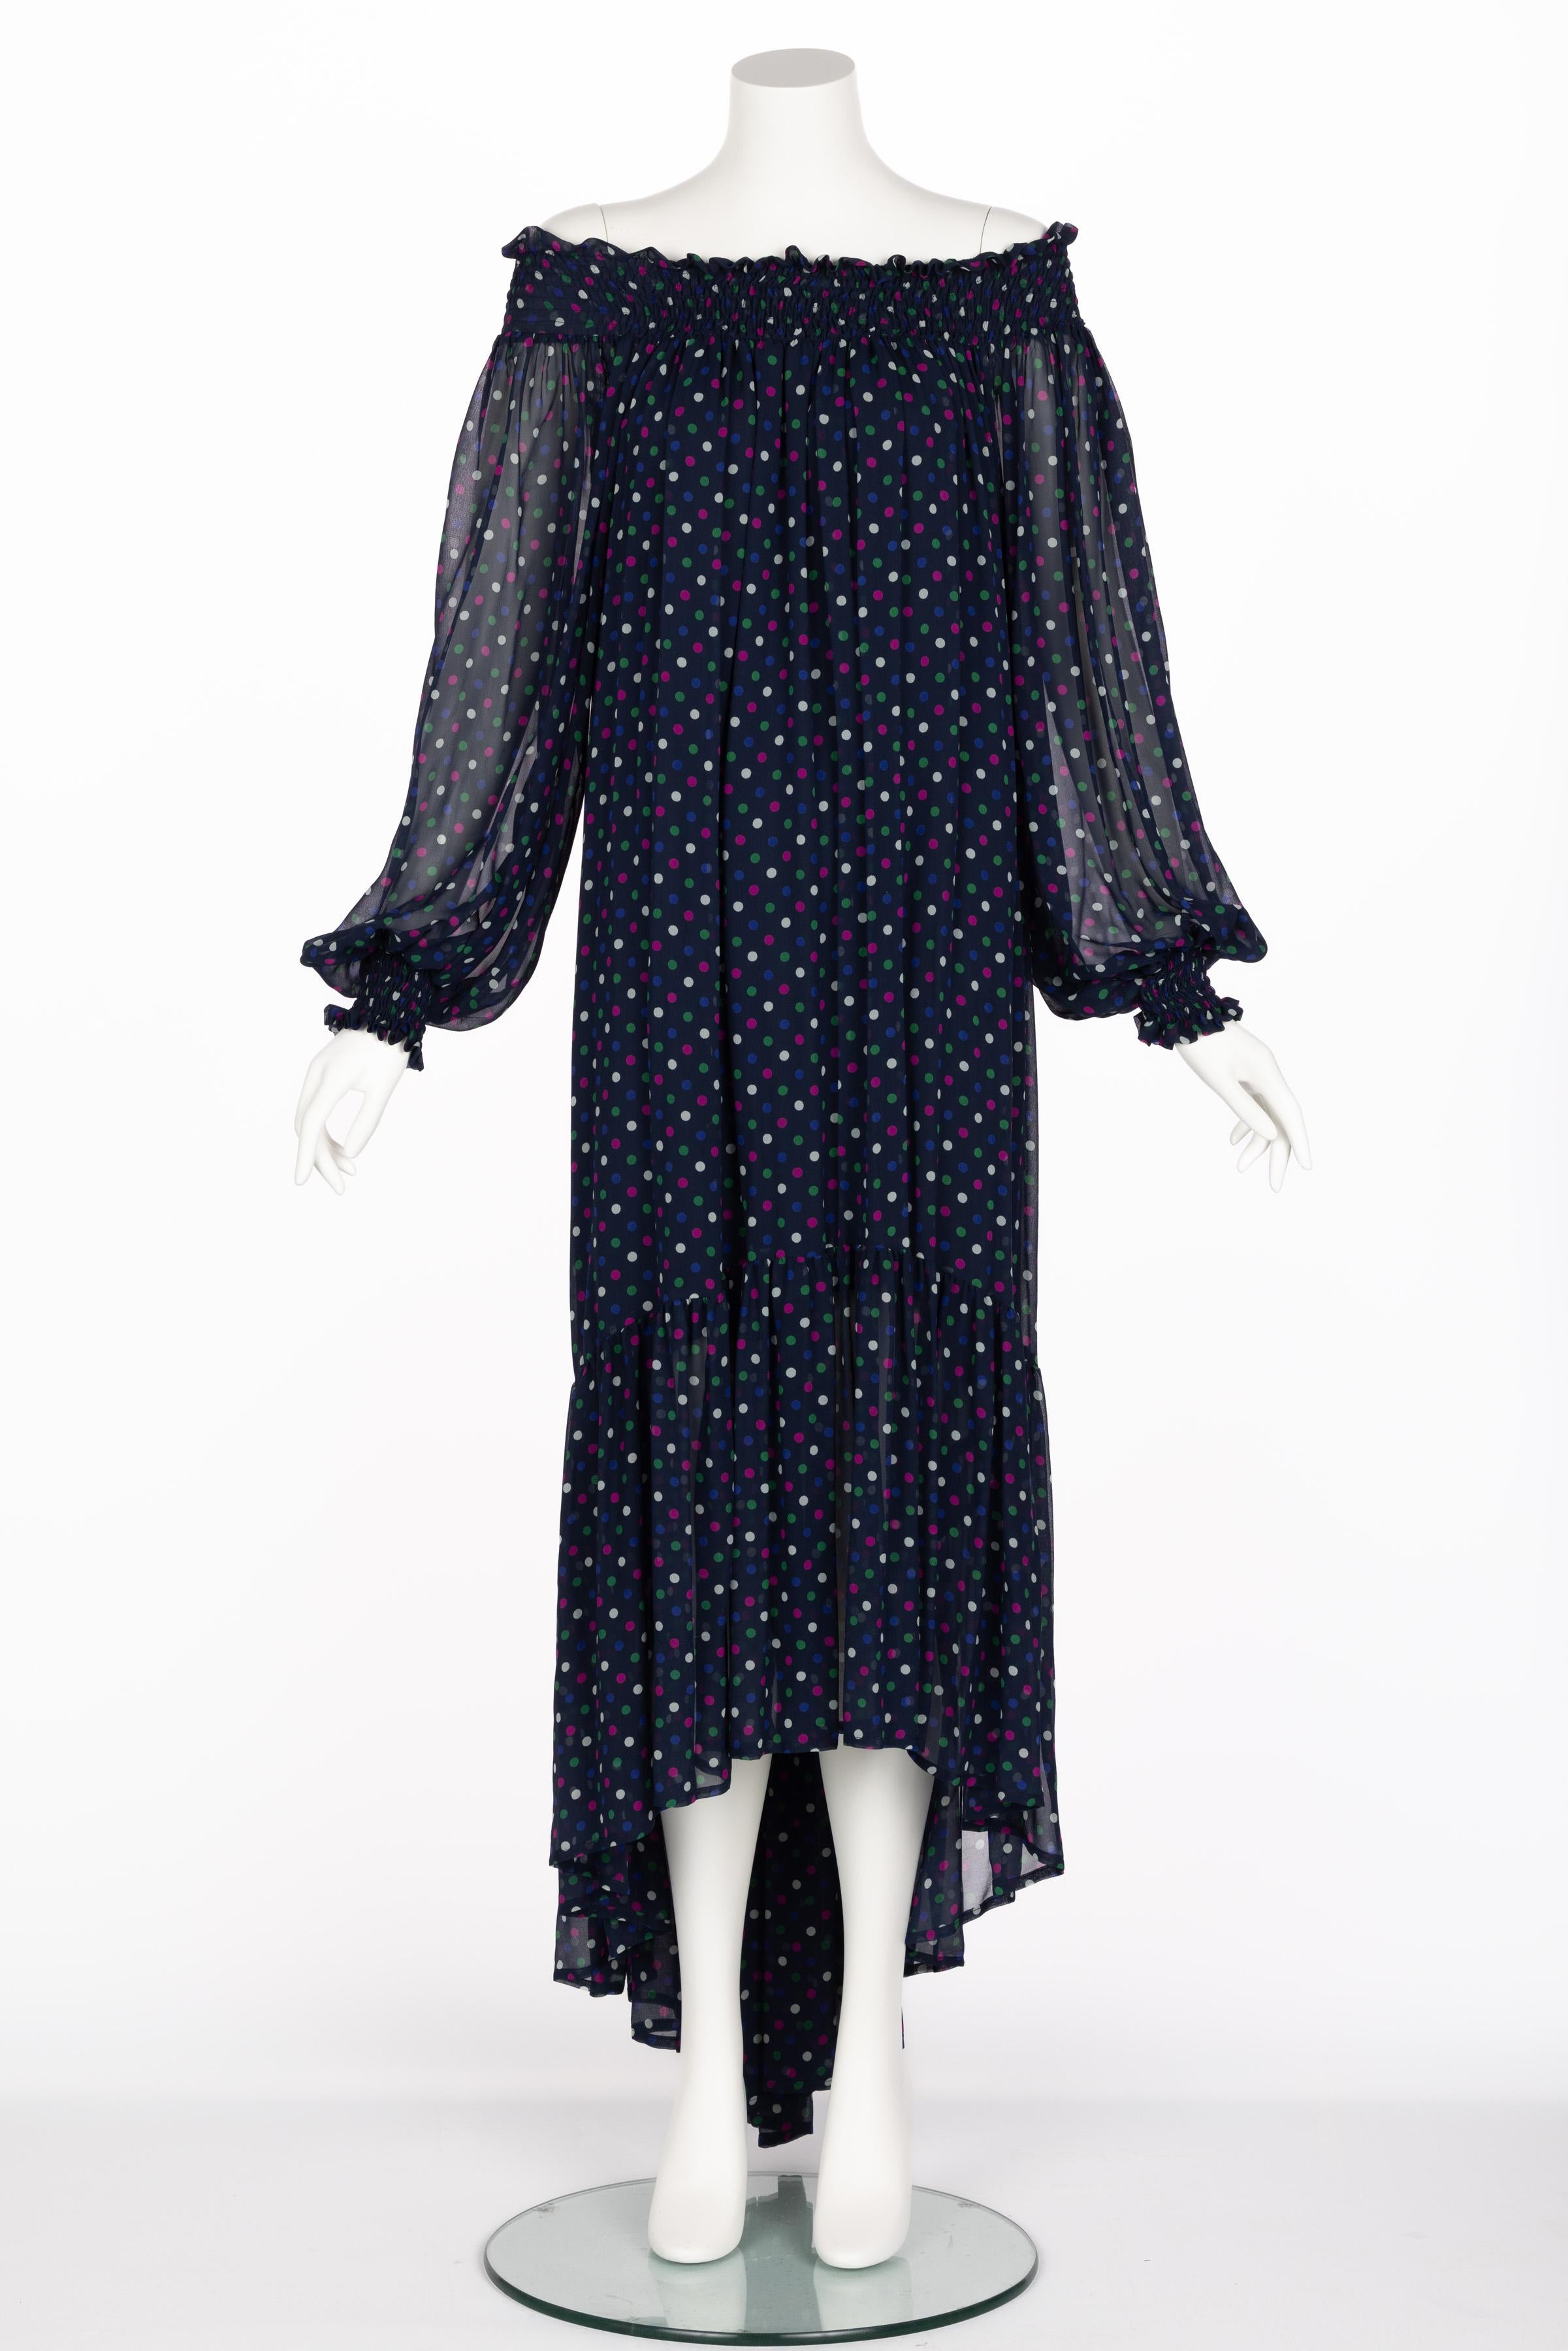 Saint Laurent Blue Polka Dot Off Shoulder Silk Dress YSL 1970s For Sale 5